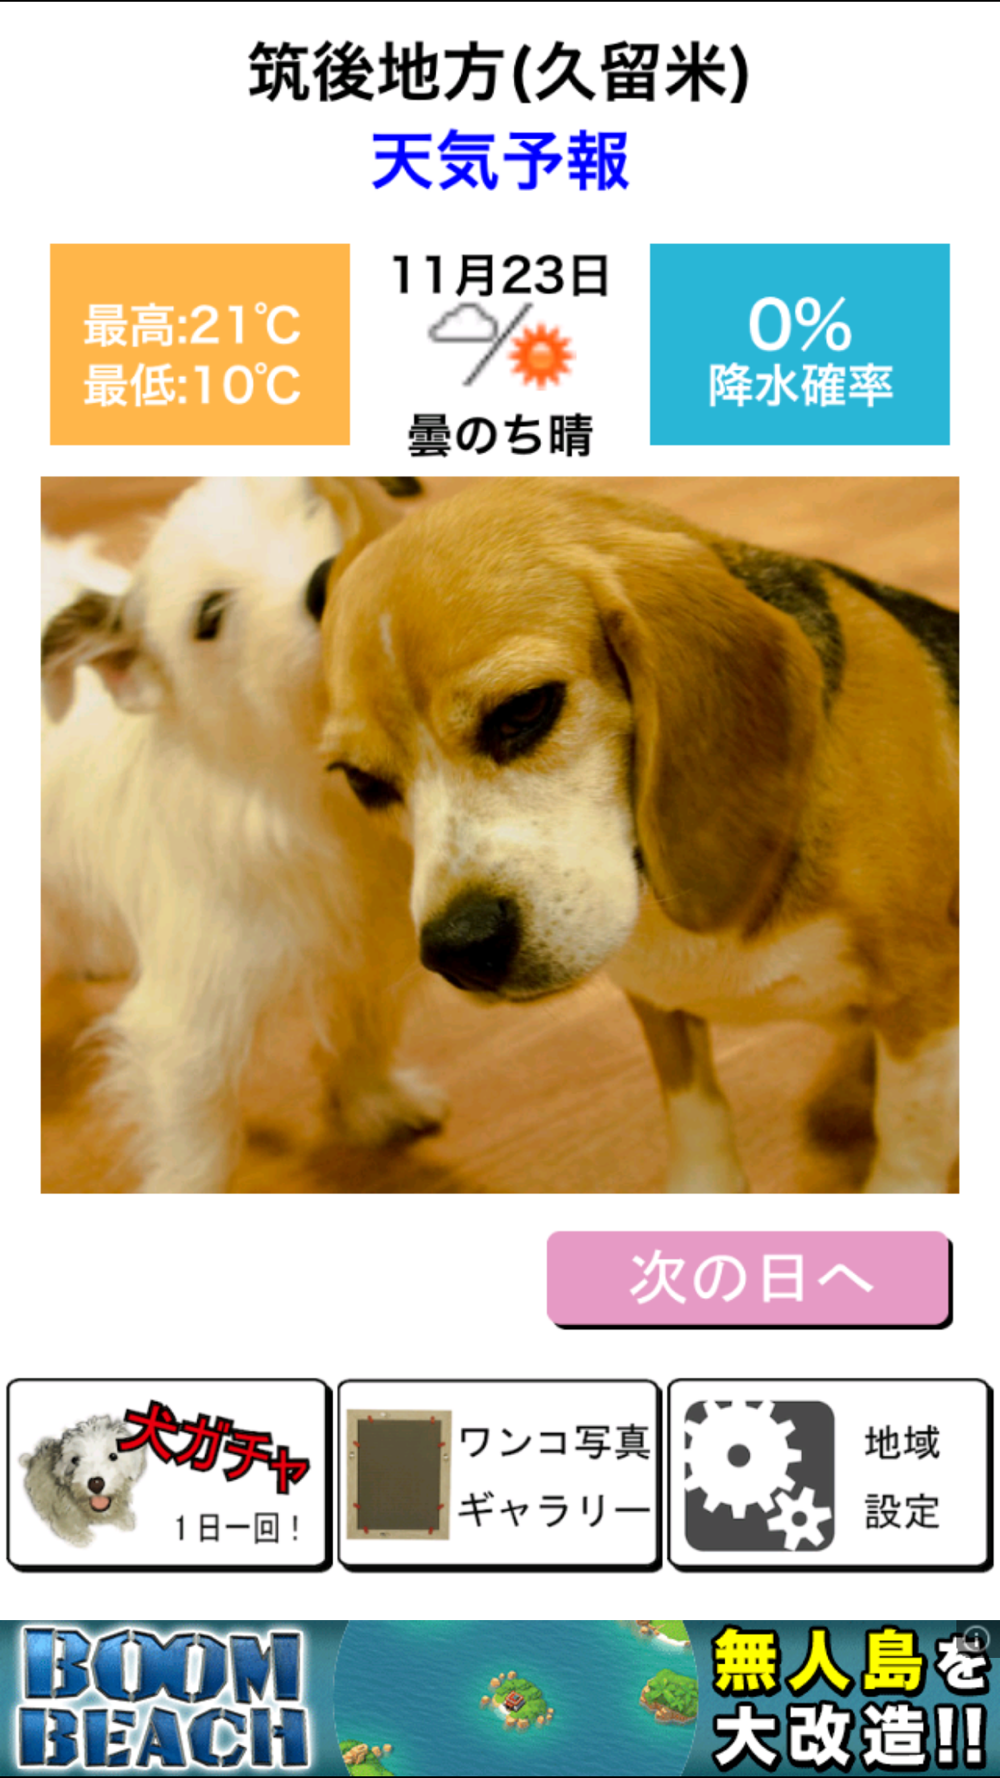 わんこ天気 天気予報 可愛い犬の写真 Free Download App For Iphone Steprimo Com